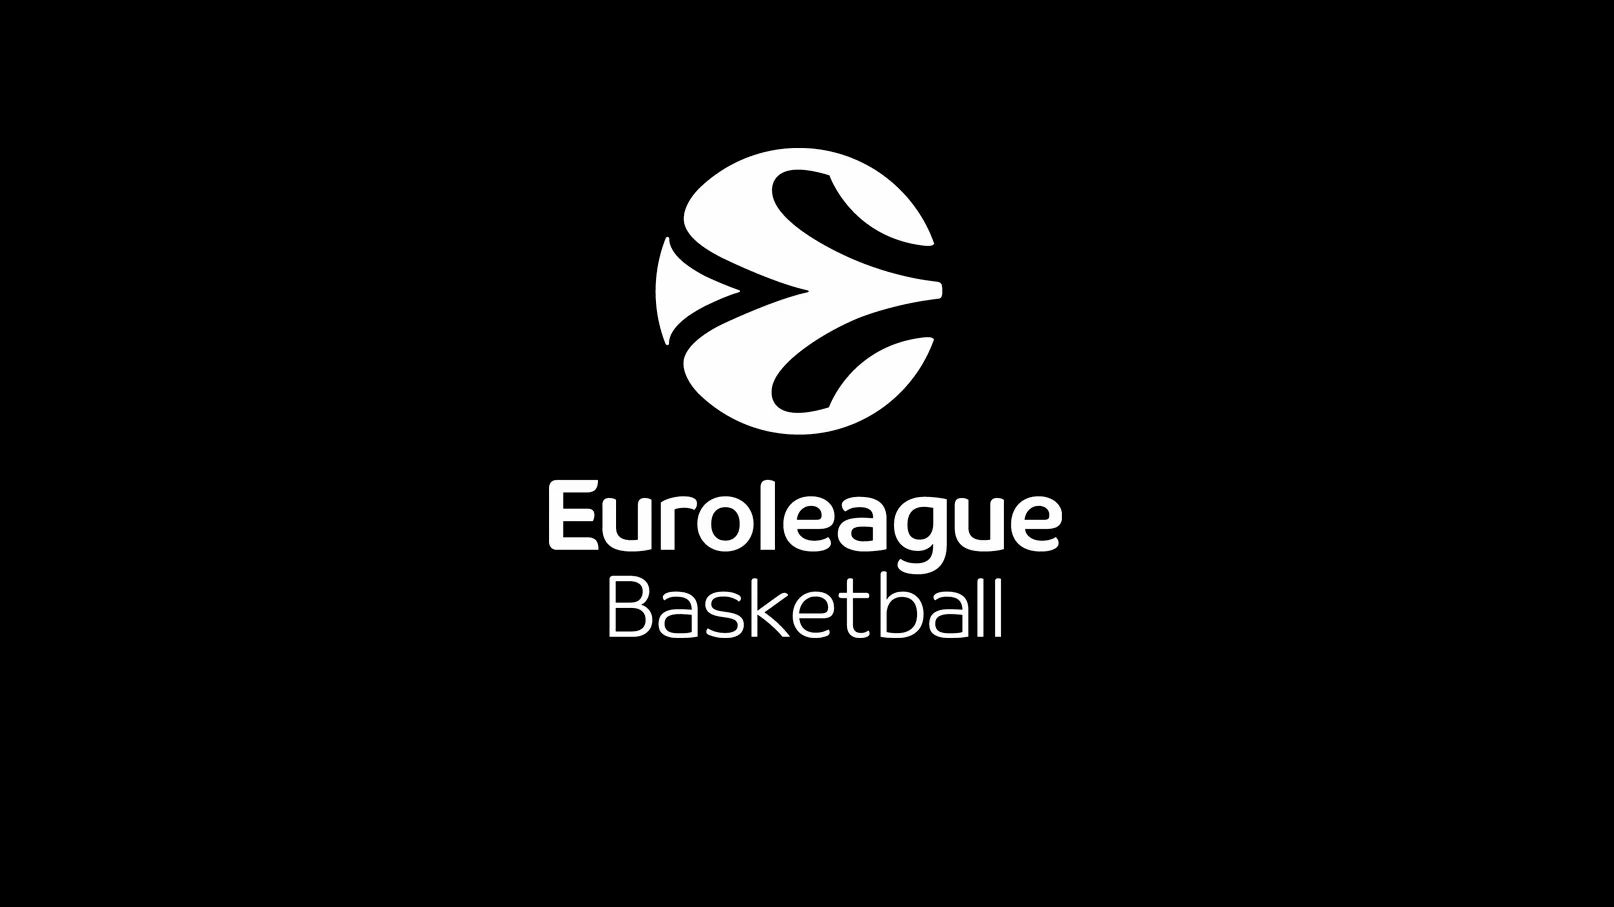 La Euroliga emitió un comunicado excluyendo temporalmente a los equipos rusos